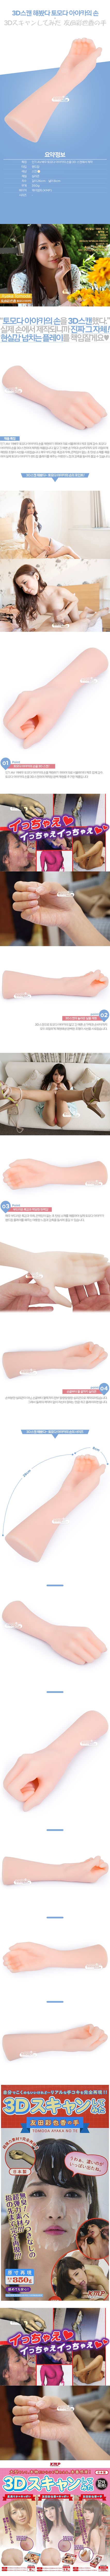 [일본 직수입] 3D스캔 해봤다~토모다 아야카의 손(3Dスキャンしてみた 友田彩也香の手) - 케이엠피(KMP)